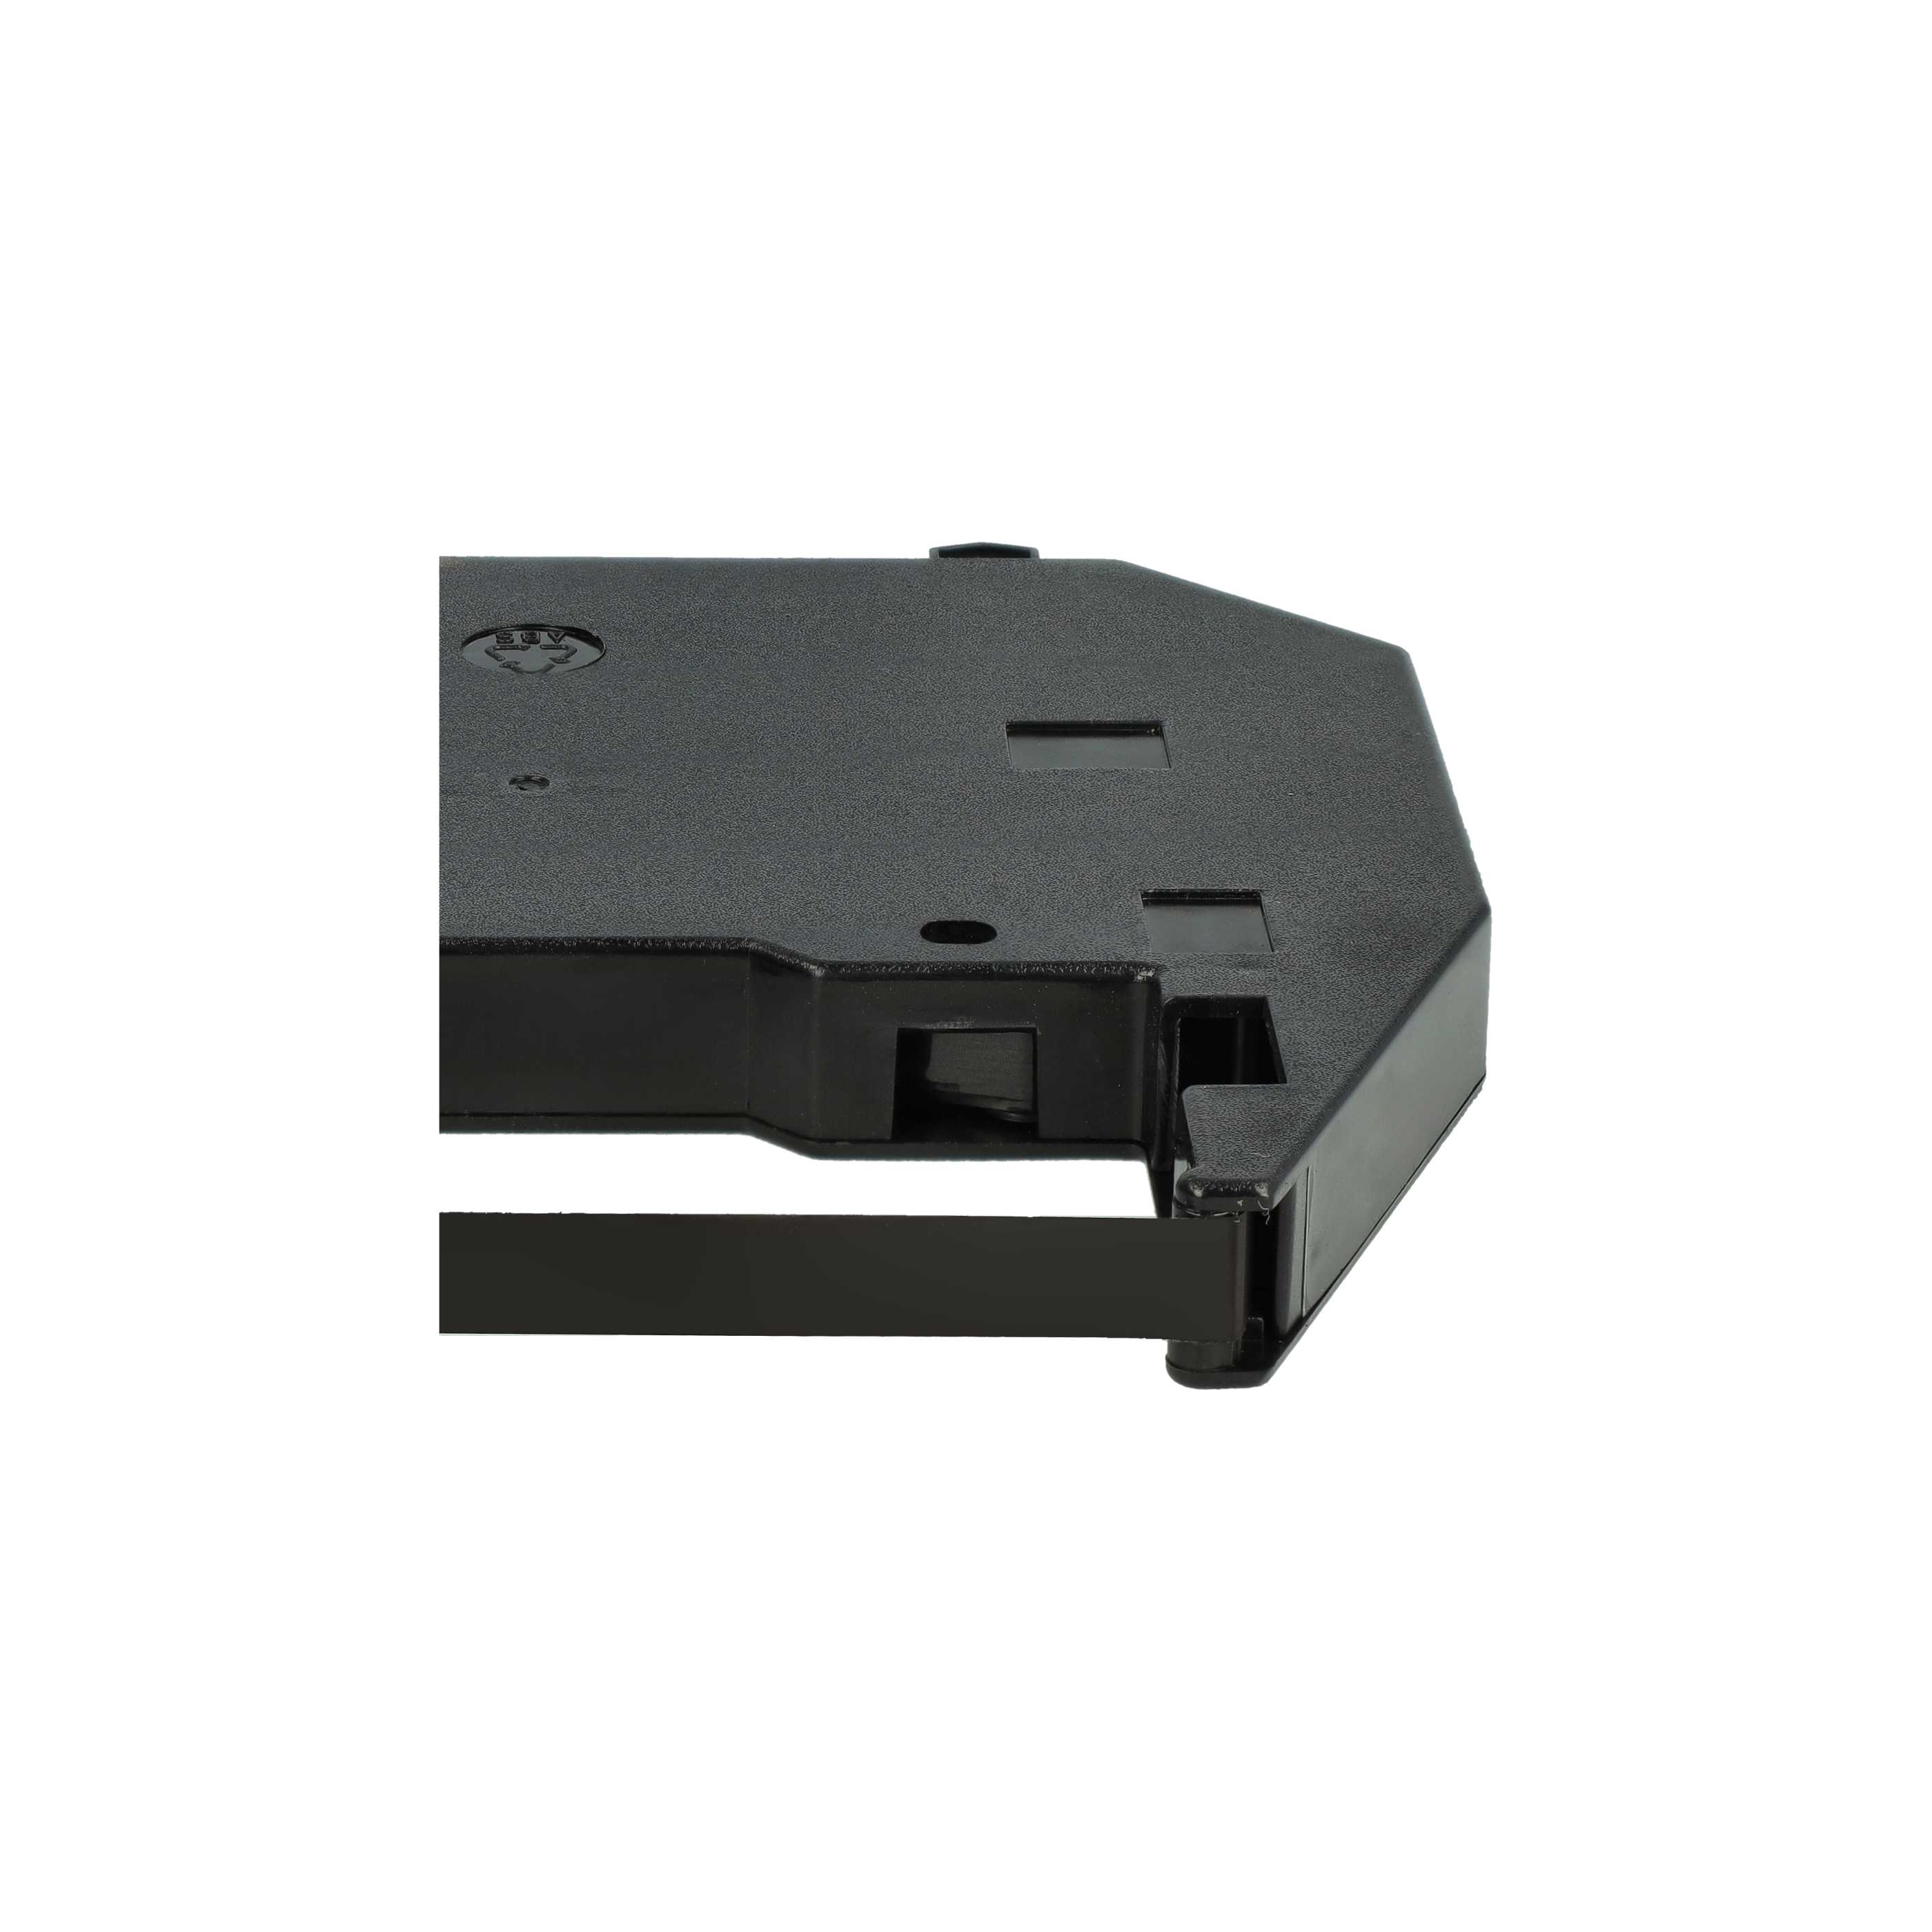 10x Ruban encreur remplace 186c1, F018602 pour imprimante matricielle / étiquette - Carbone, noir